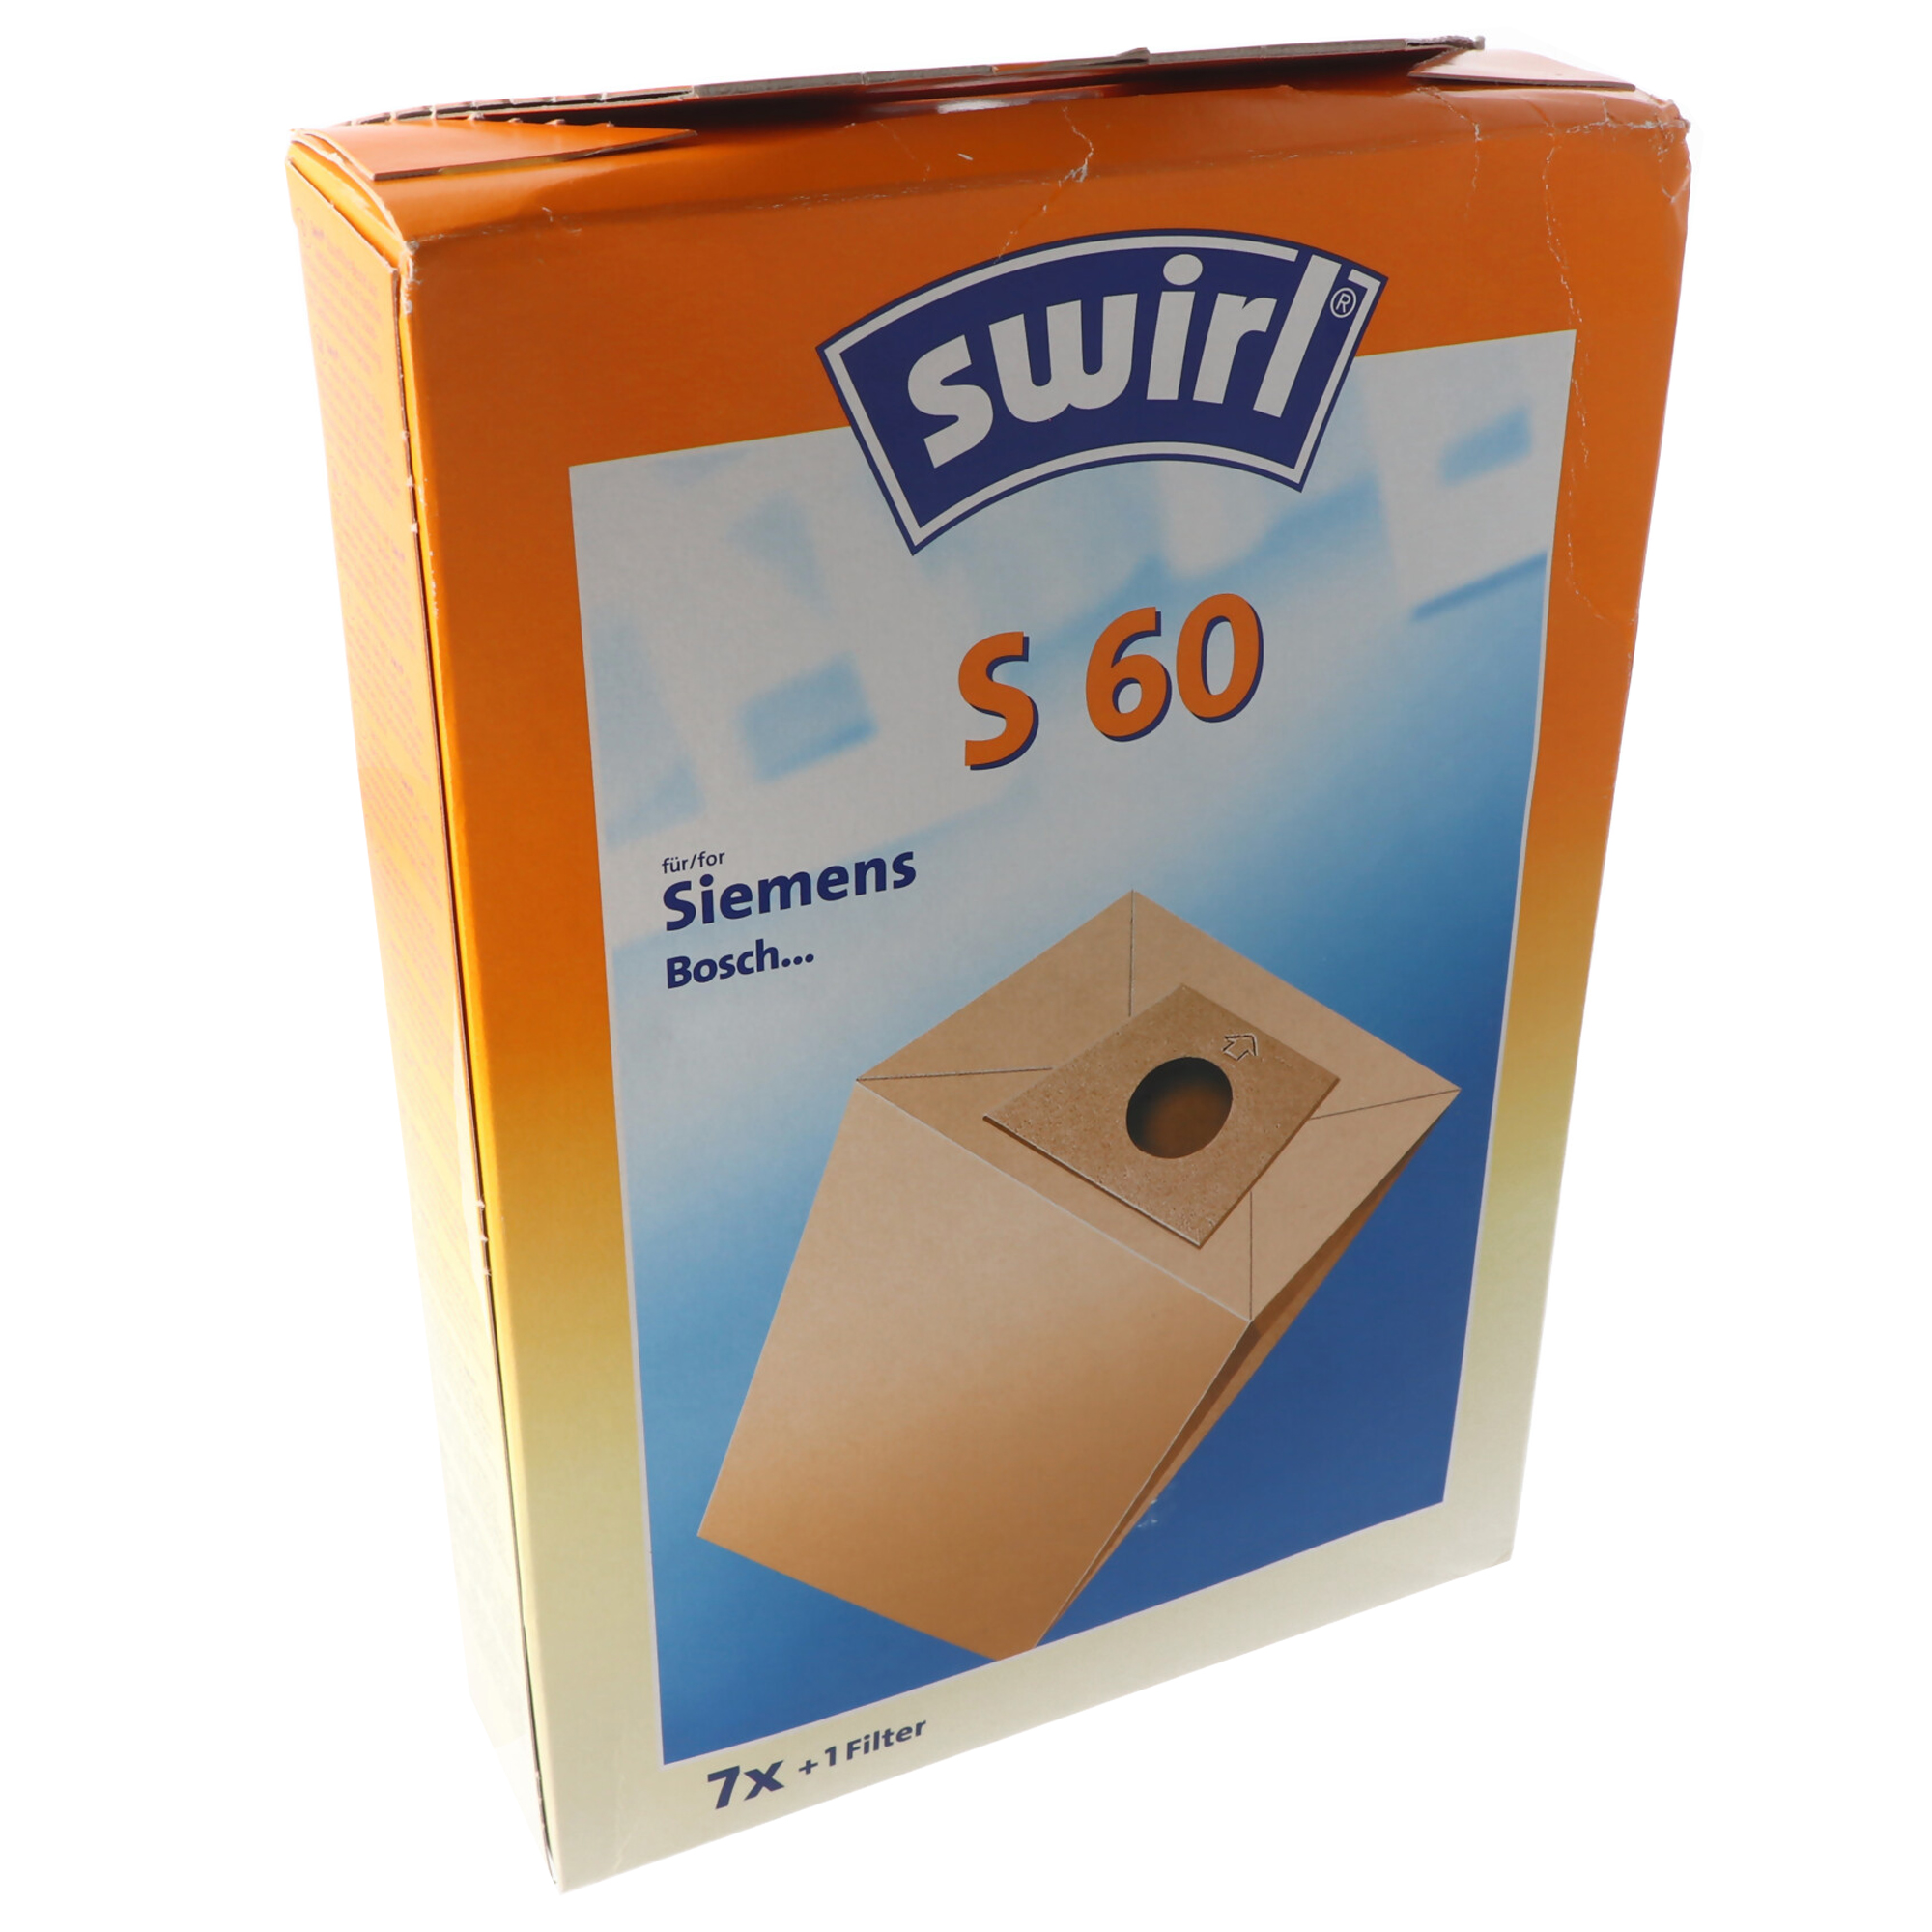 Swirl Staubsaugerbeutel S60 Classic aus Spezialpapier für Siemens und Bosch Staubsauger